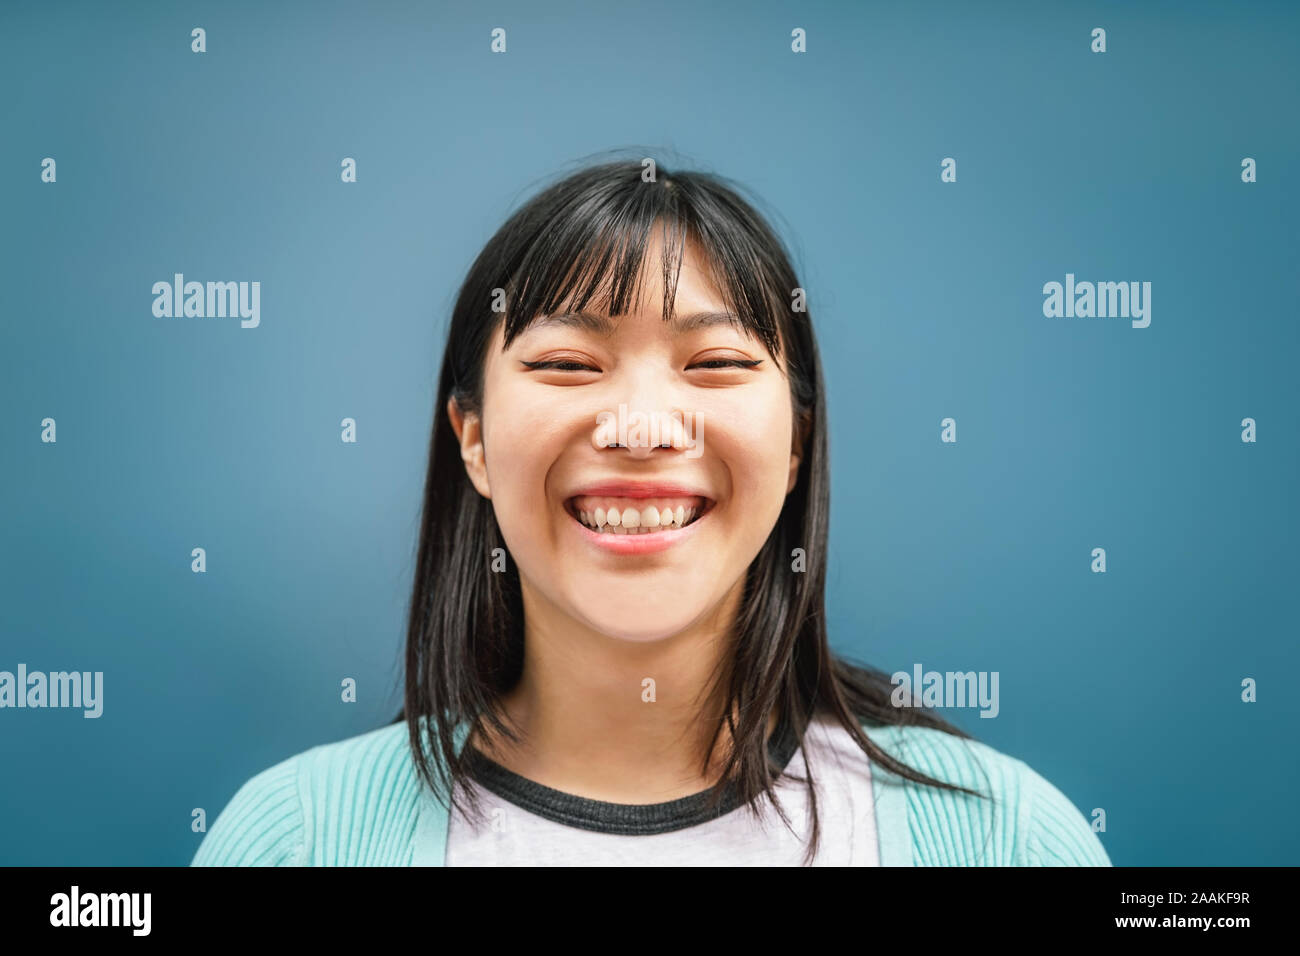 Portrait von jungen asiatischen Mädchen lächelnd an Kamera - Glückliche chinesische Frau Spaß vor blauem Hintergrund posiert Stockfoto